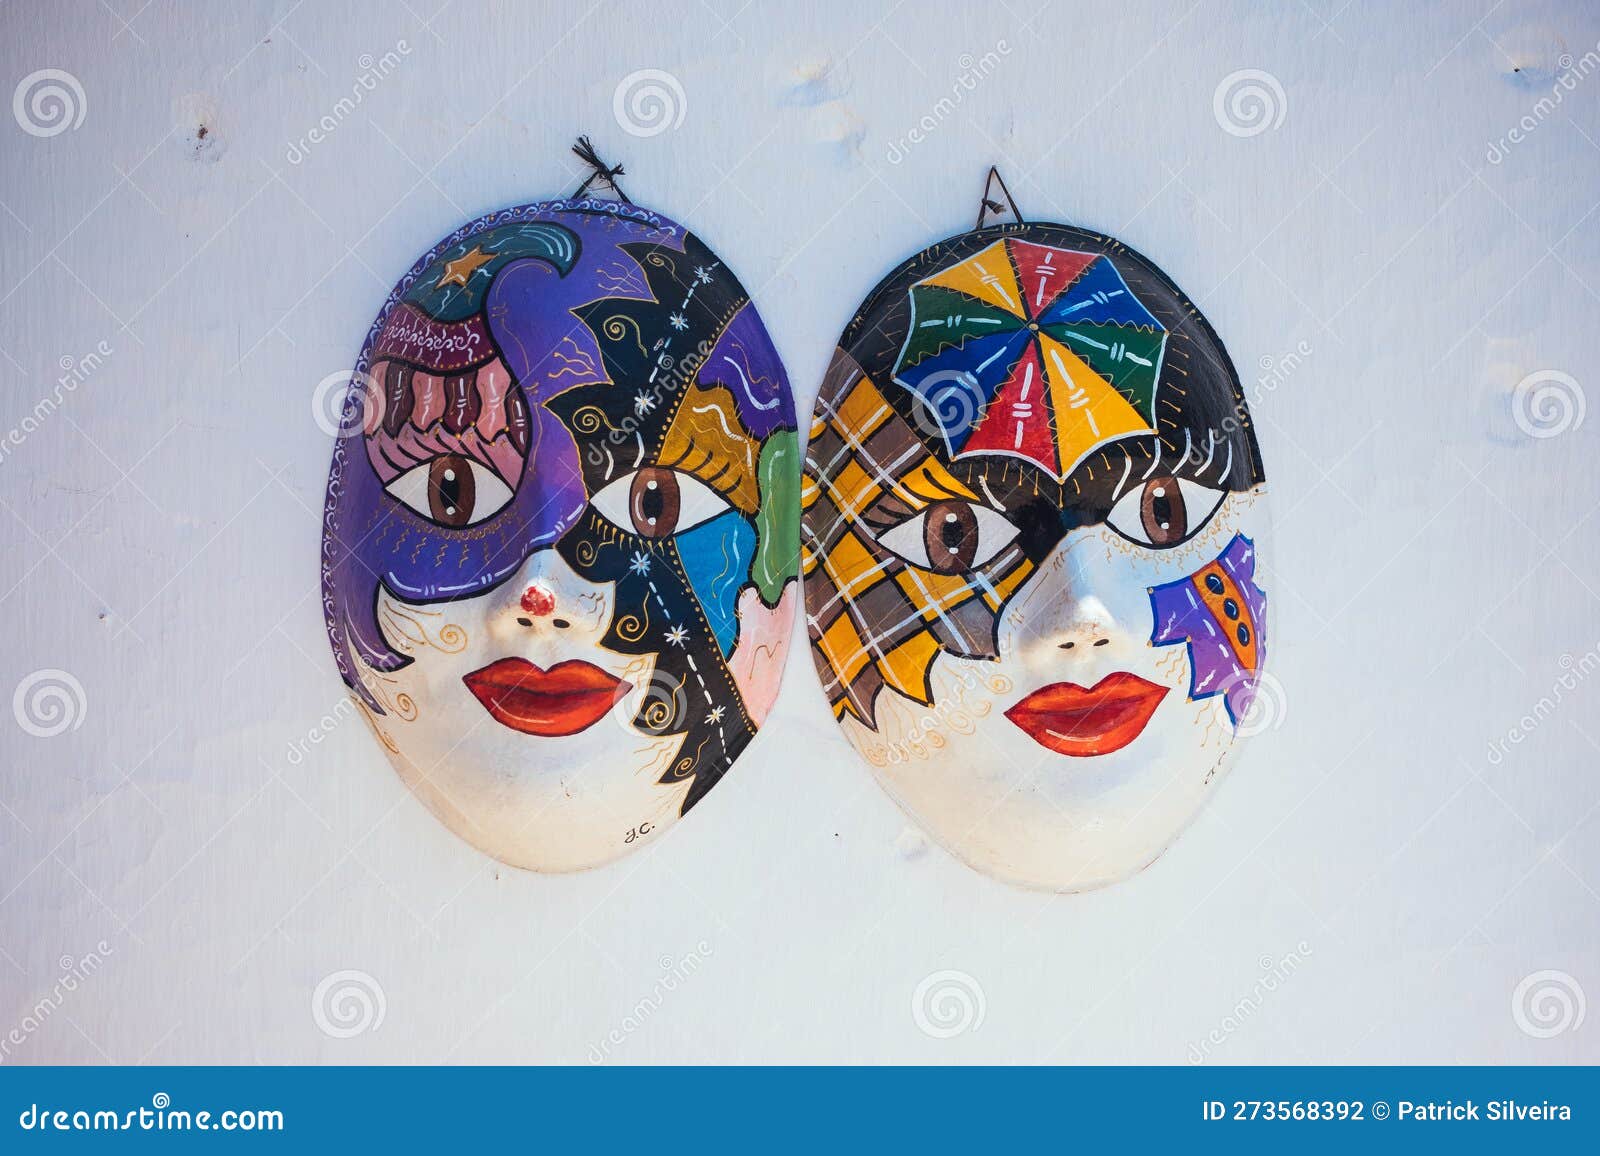 traditional brazilian carnival masks in olinda - pernambuco